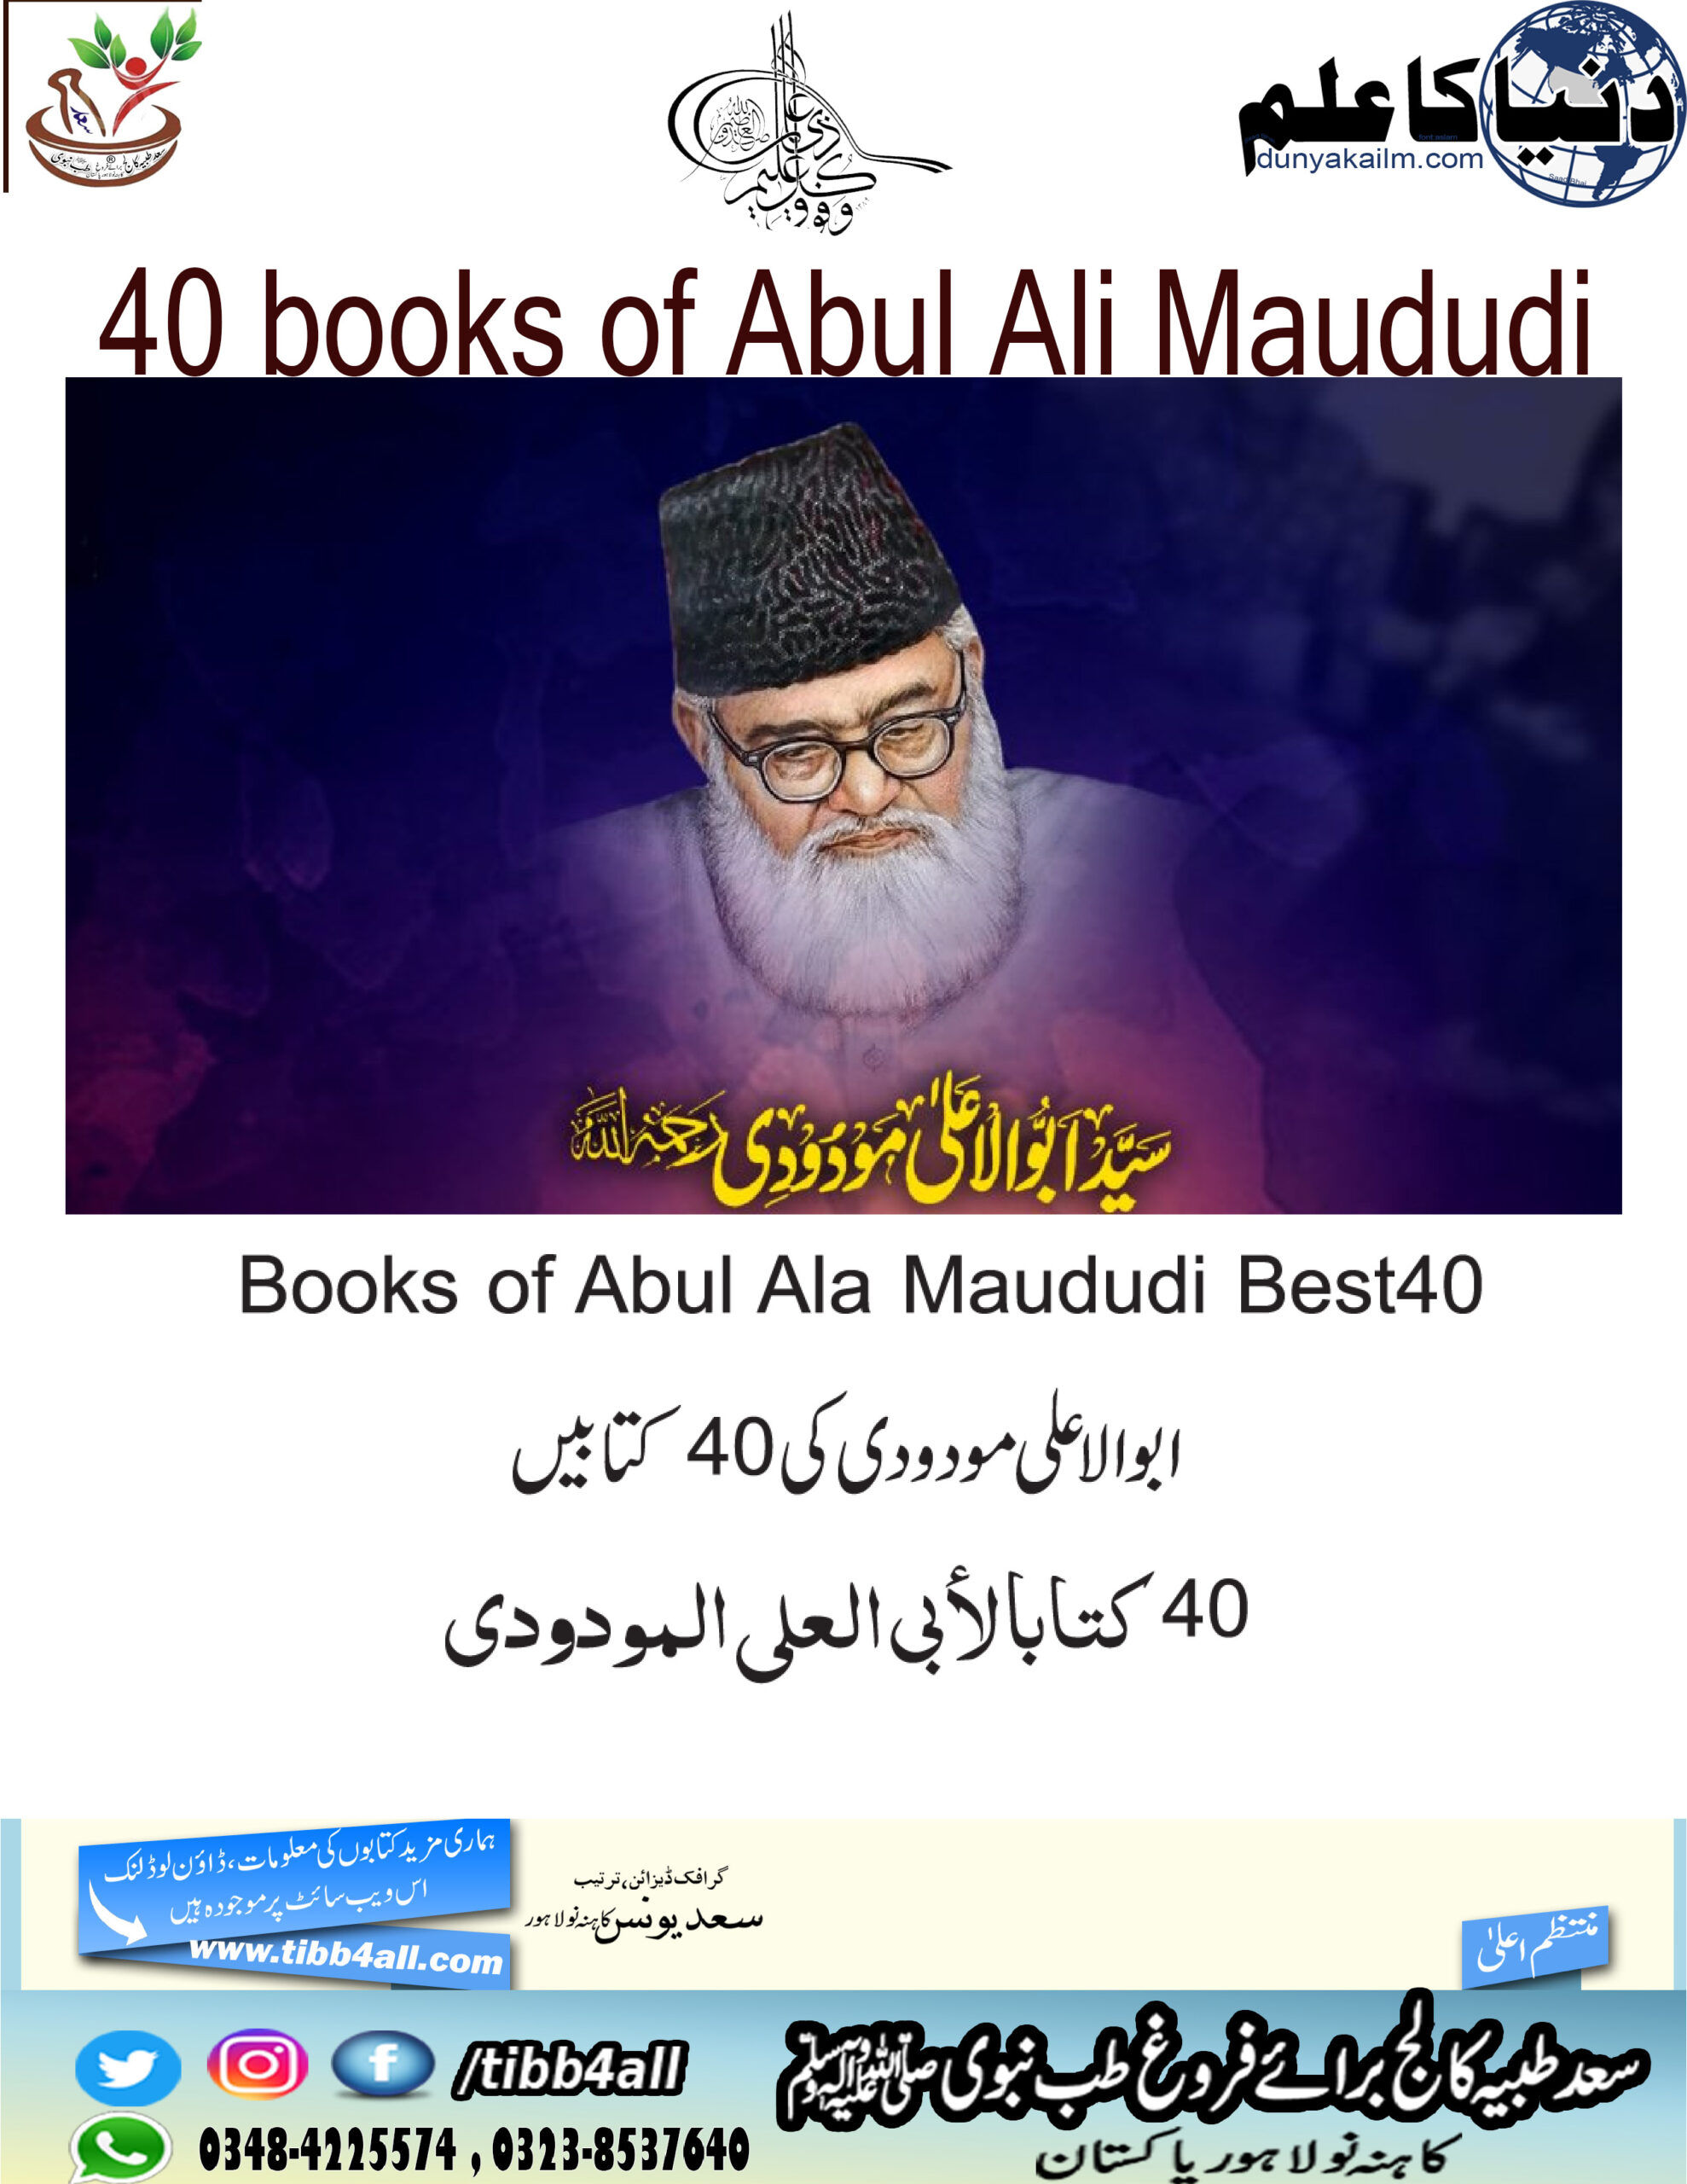  1 / 1 – 40 Best Books of Abul Ala Maududi(www.dunyakailm.com).jpg 